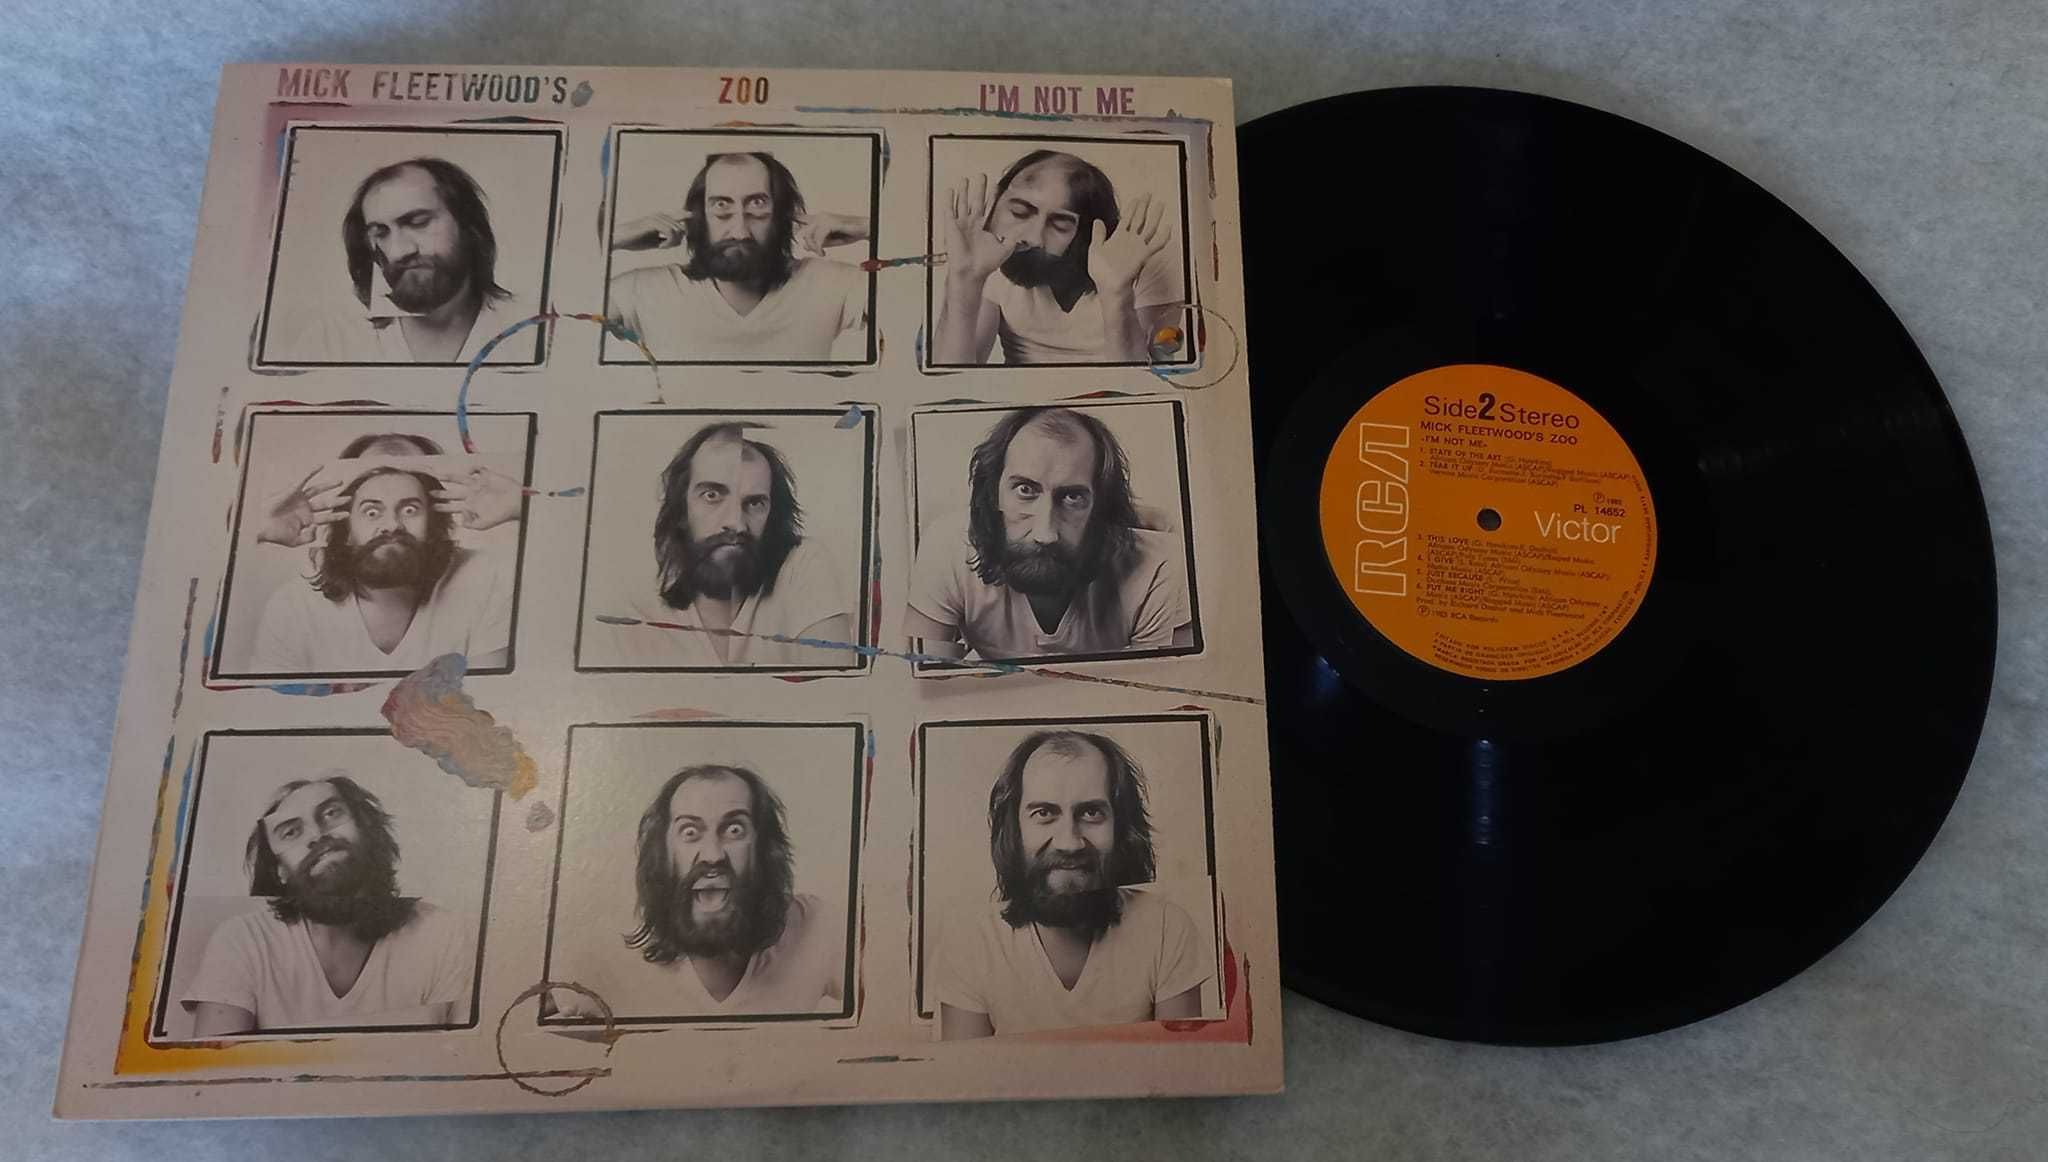 Mick Fleetwood (Fleetwood Mac) - I'm not me - LP 1983 Portugal